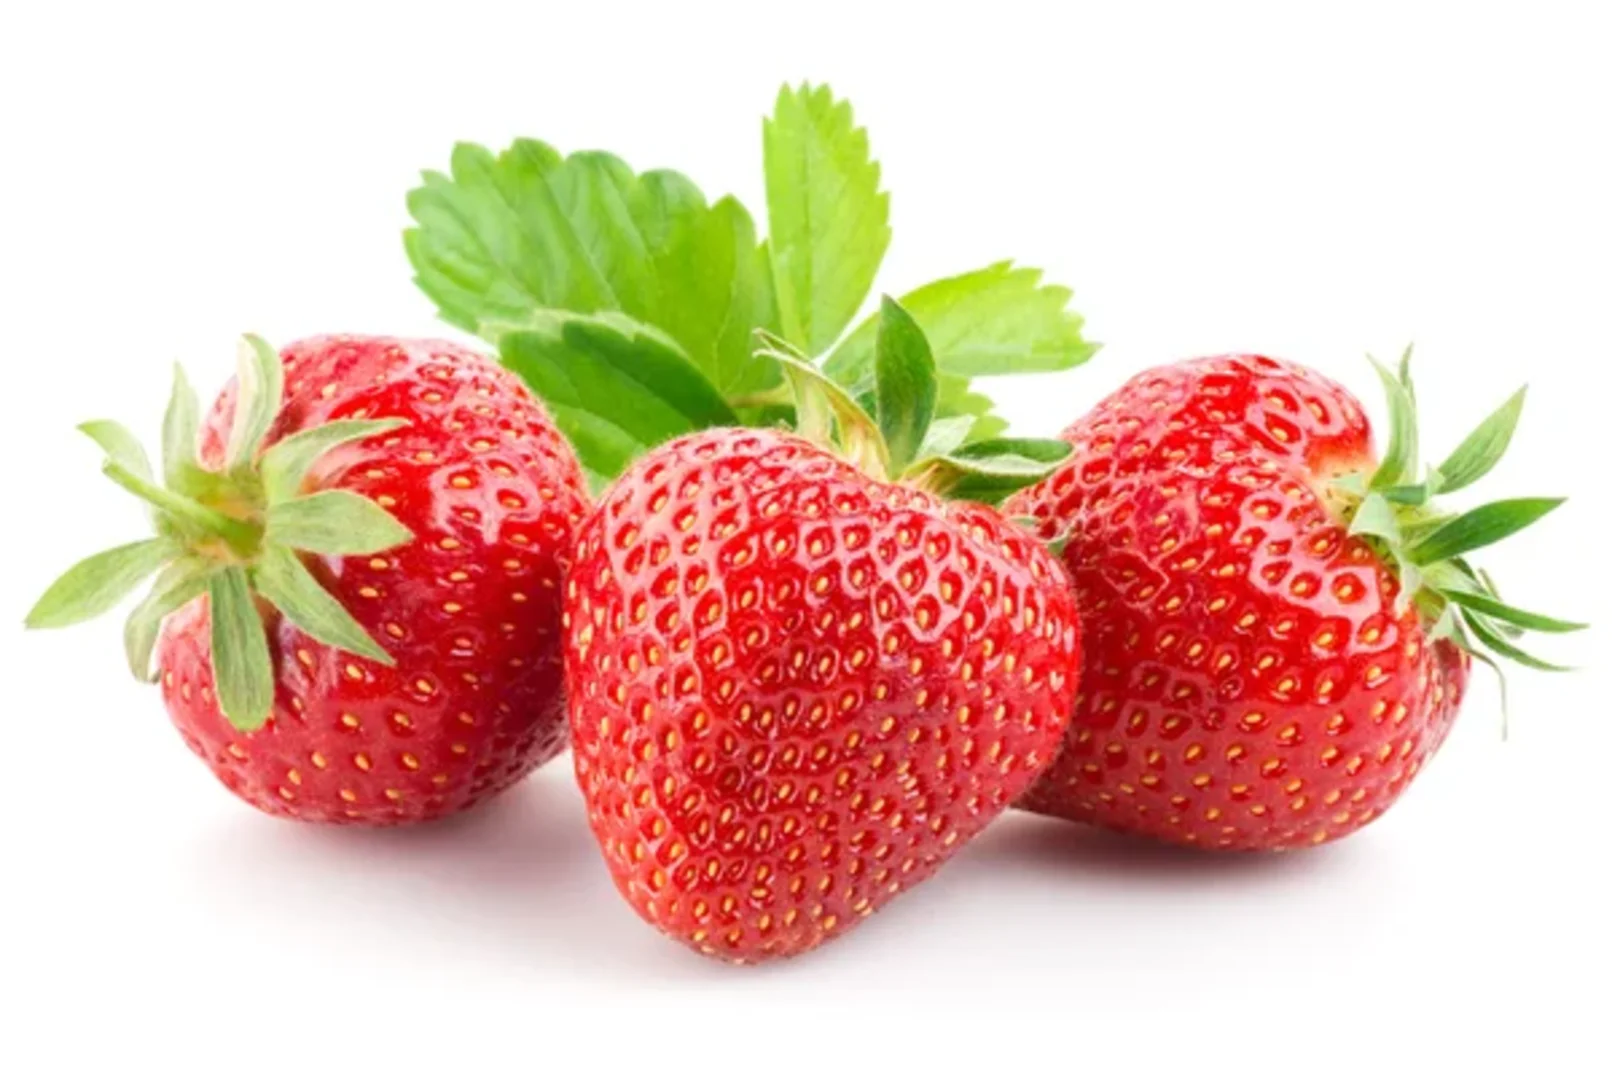 Strawberries 1 kg